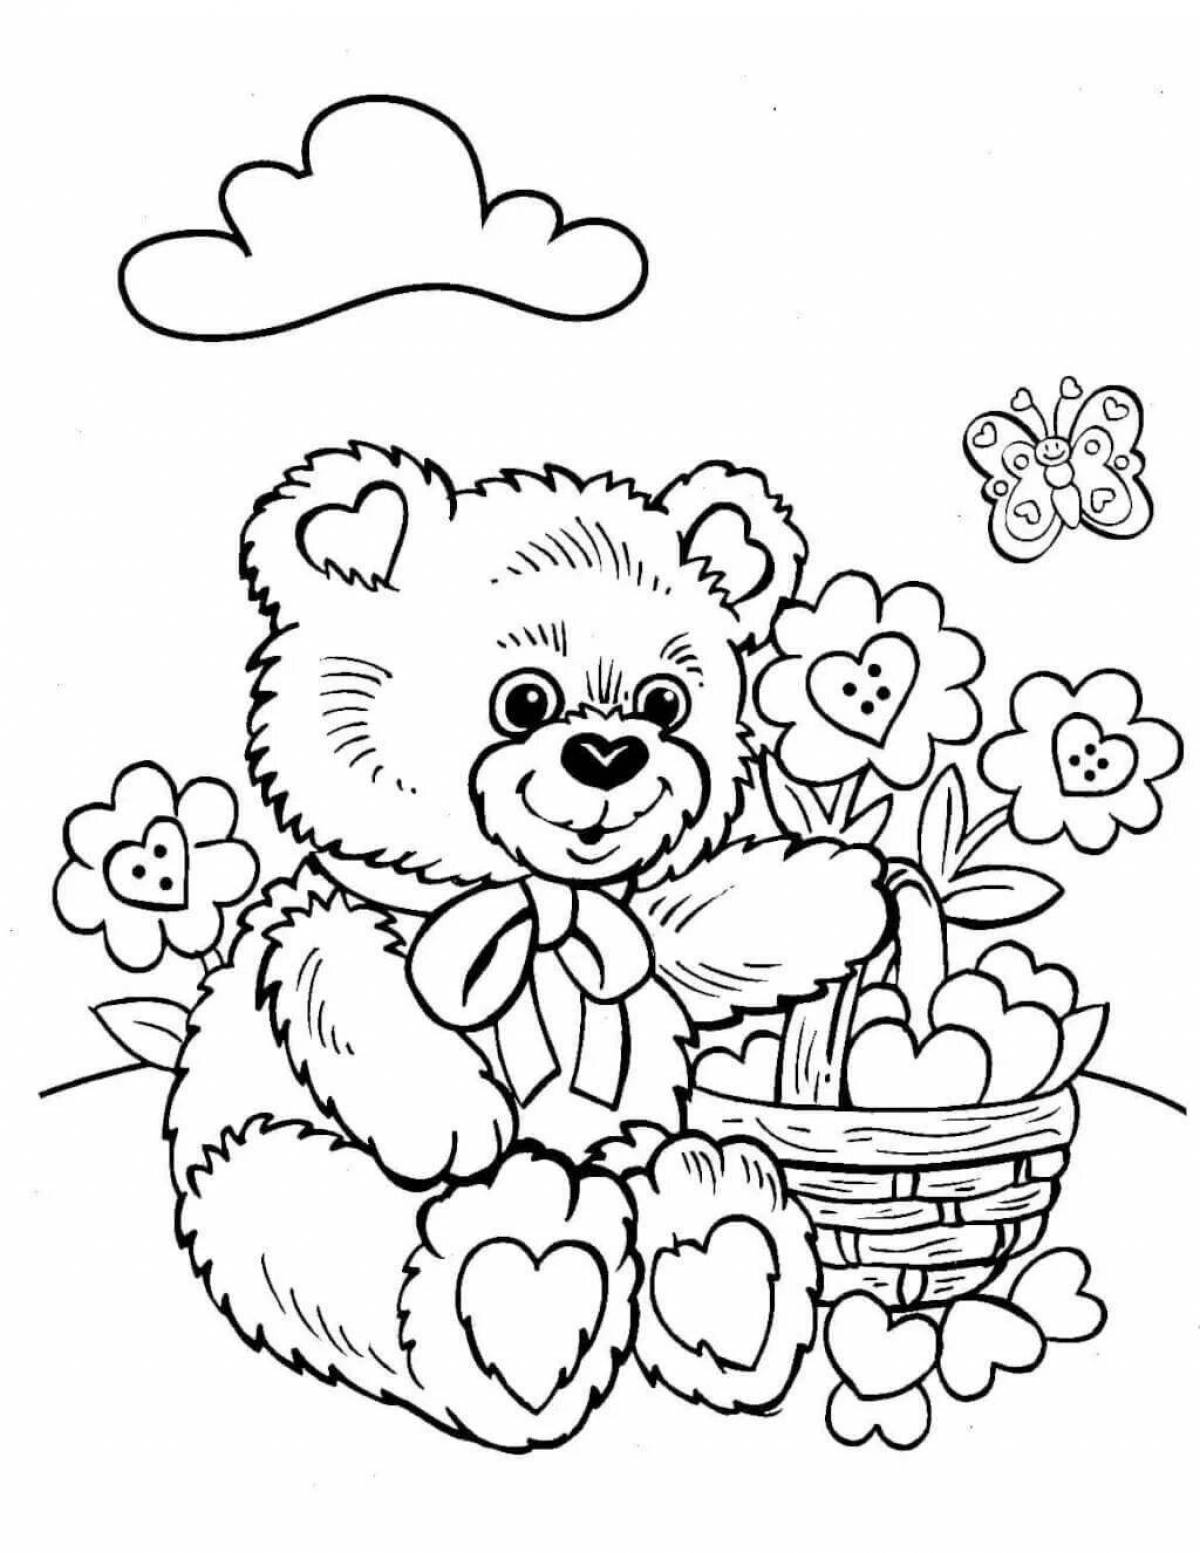 Раскраска «яркий медведь» для детей 6-7 лет